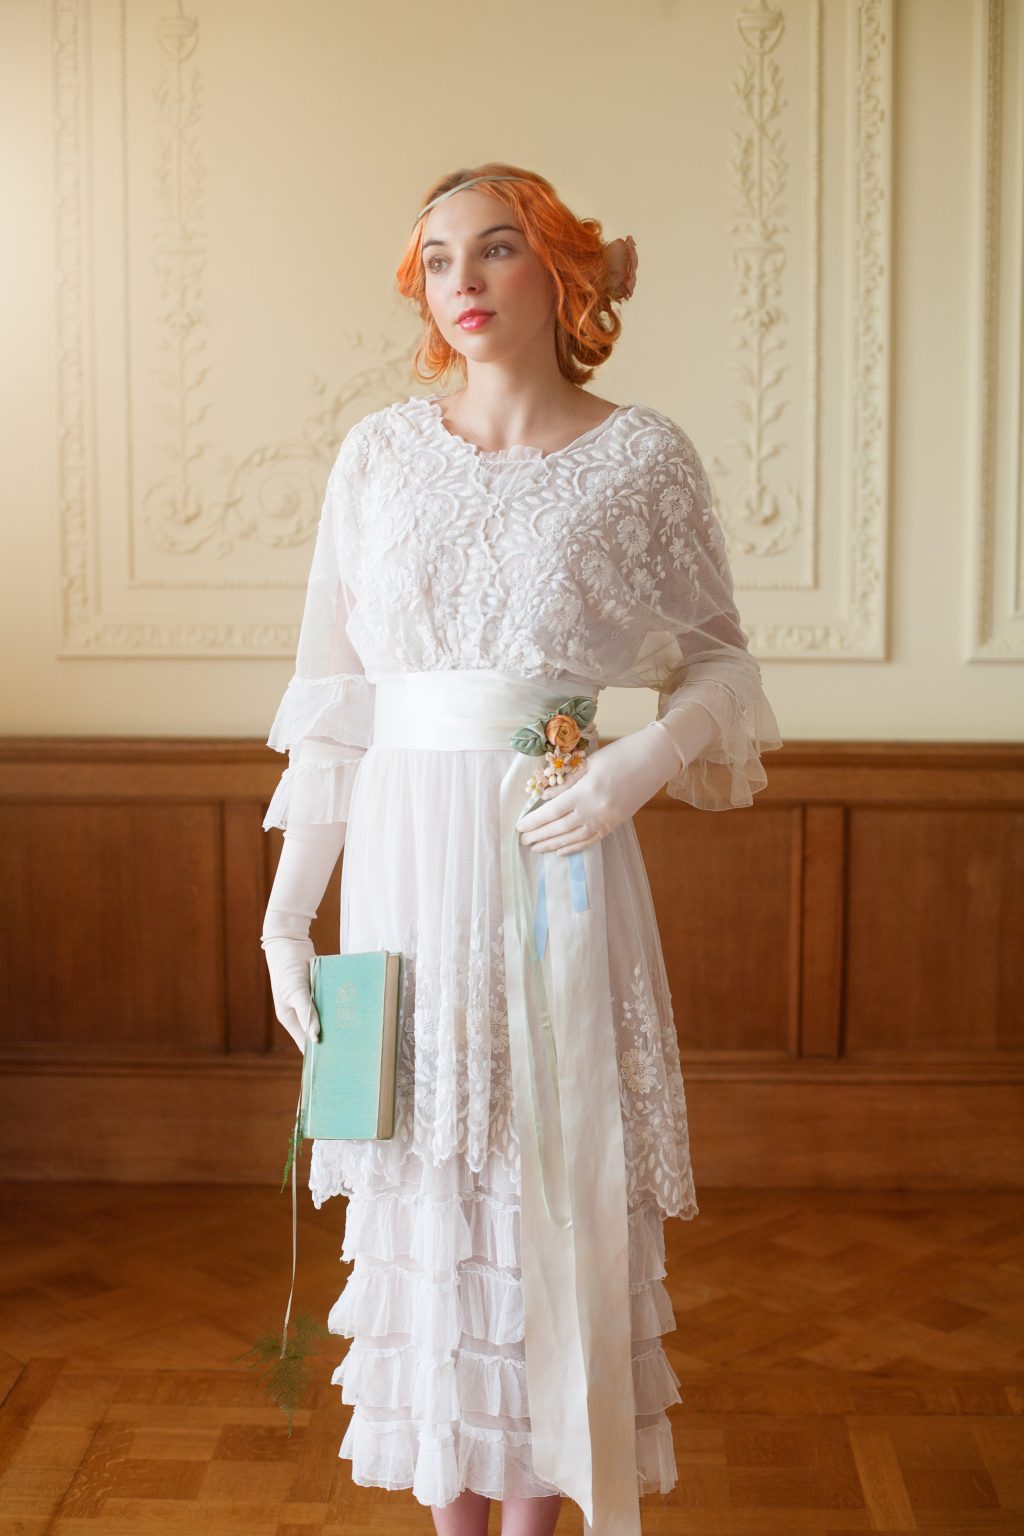 Vintage Wedding Dress Inspiration - The Edwardian Era